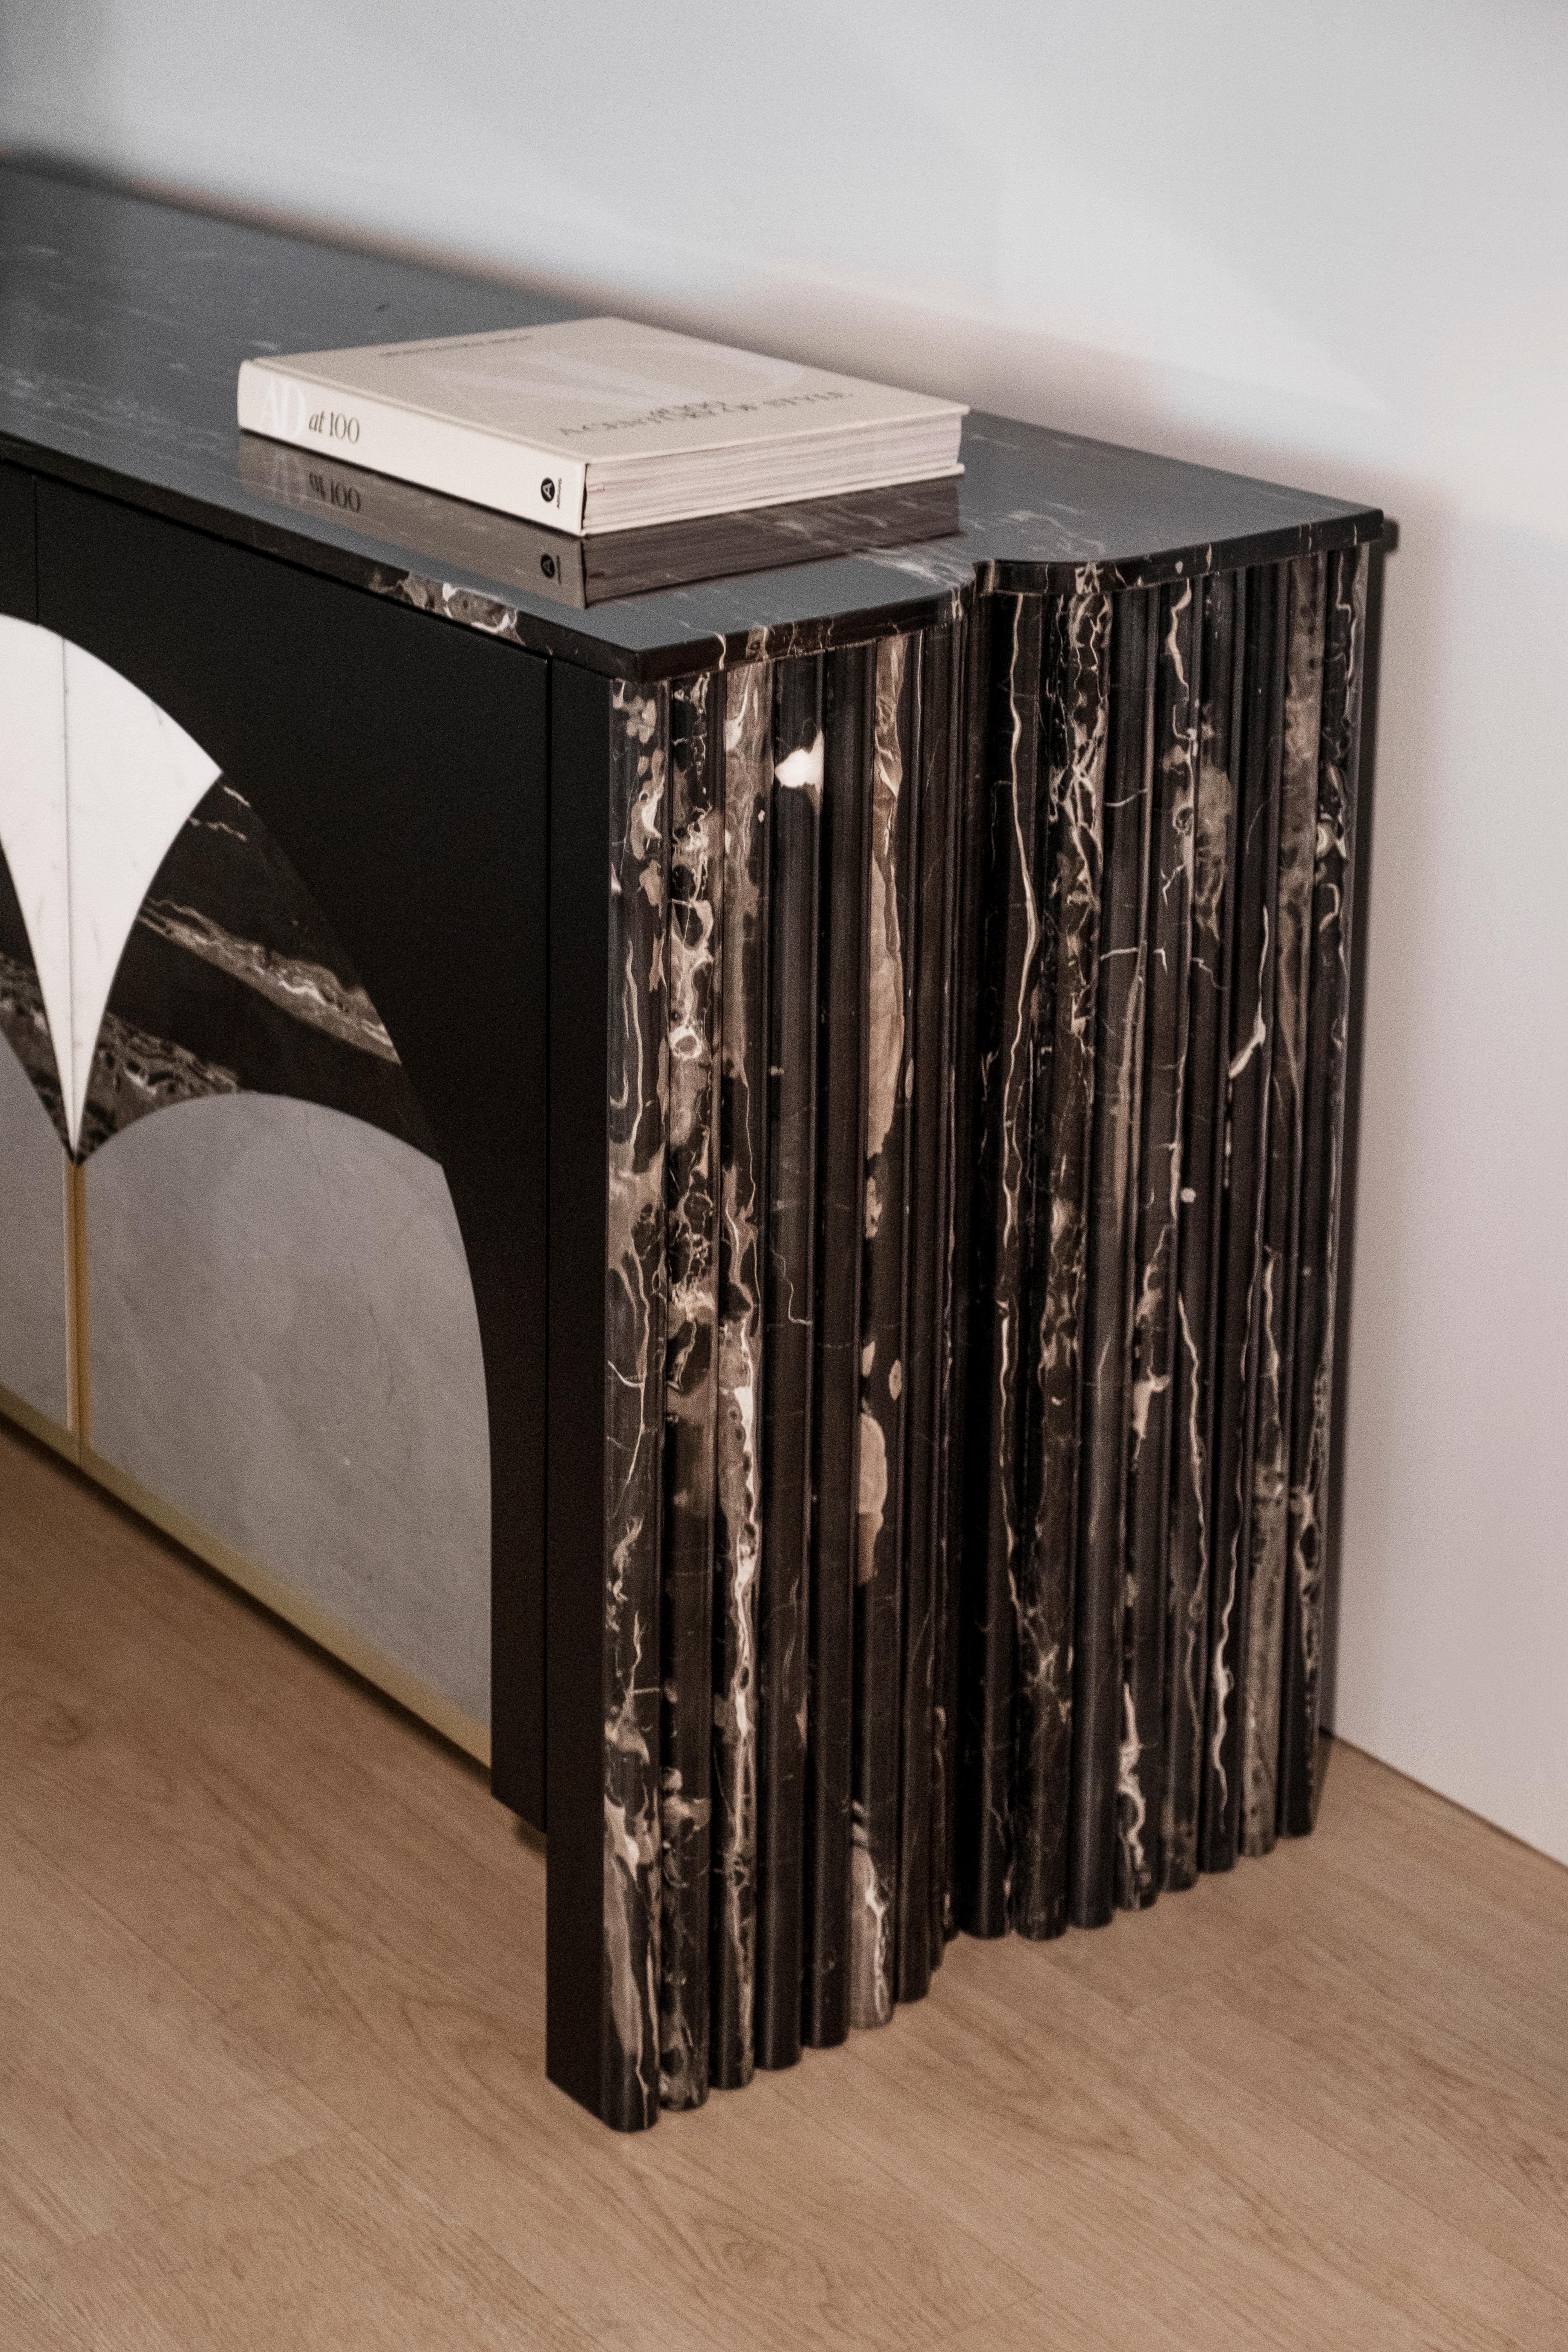 Biloba Sideboard, Contemporary Collection, handgefertigt in Portugal - Europa von Greenapple.

Das von Rute Martins für die Collection'S Contemporary entworfene moderne Sideboard Biloba begann mit der Herausforderung, die grundlegenden Strukturen